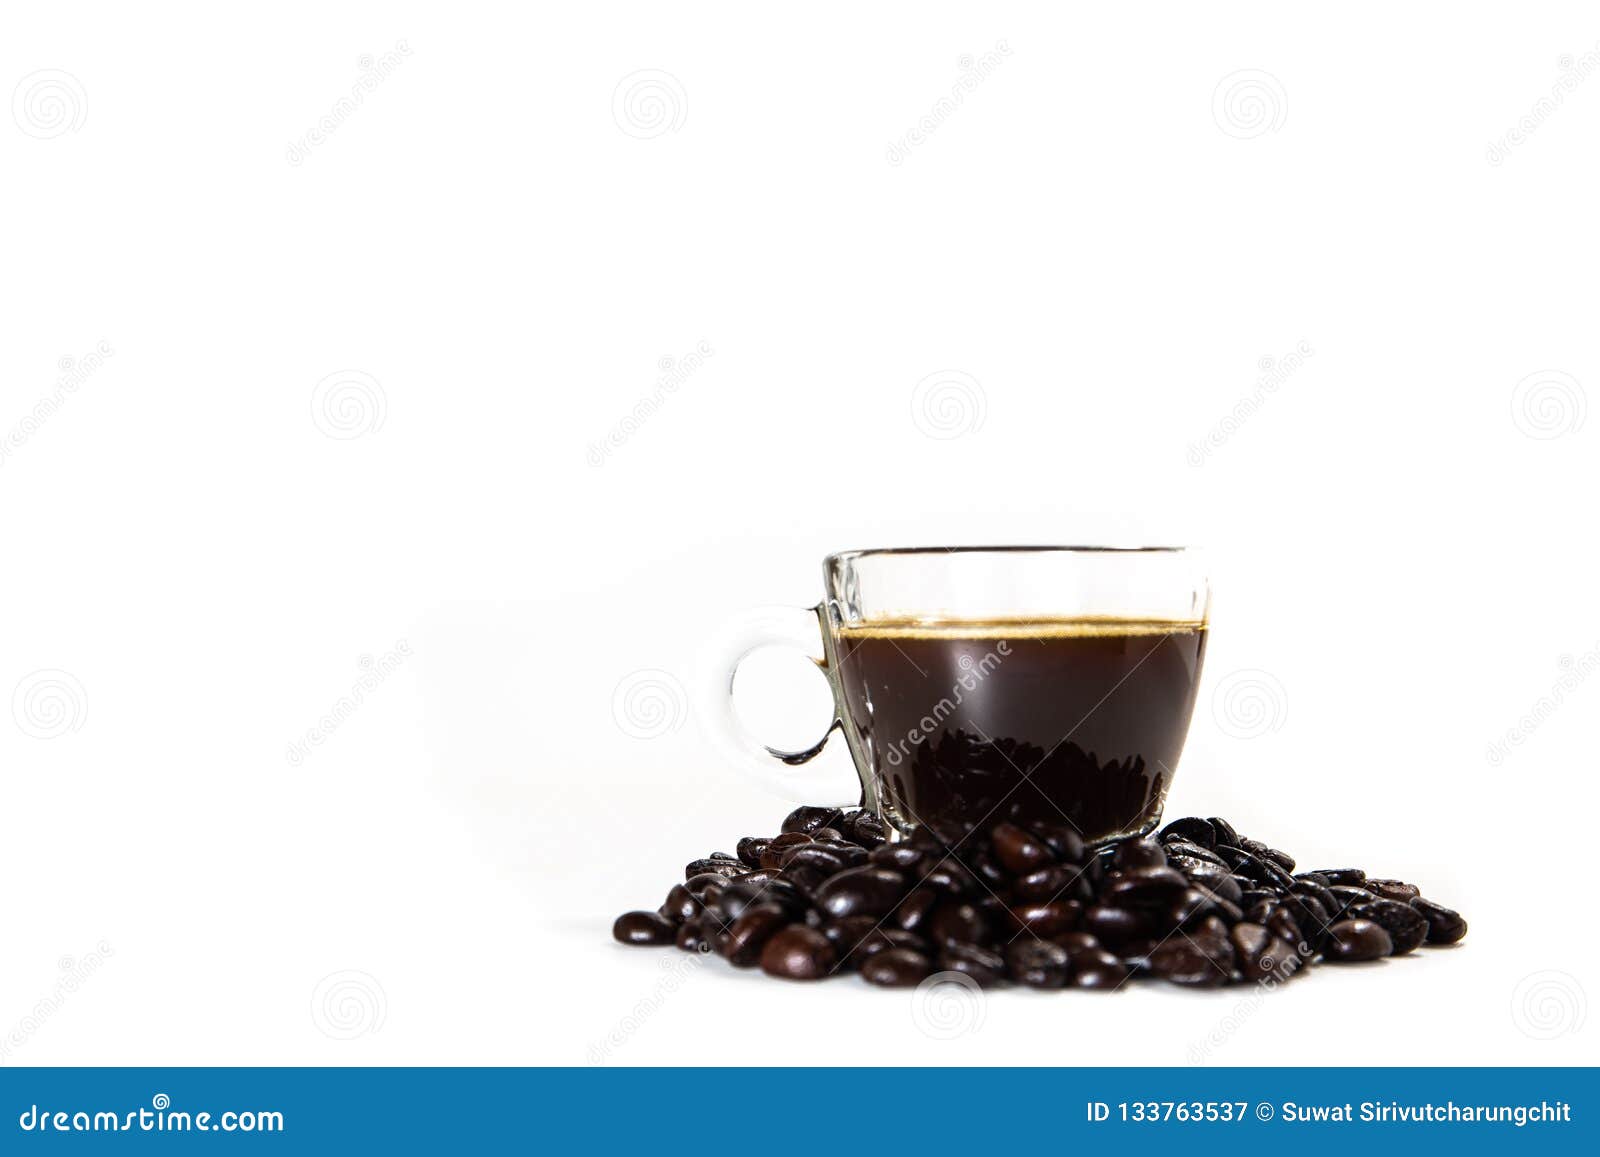 the glass mug of coffee and coffee bean